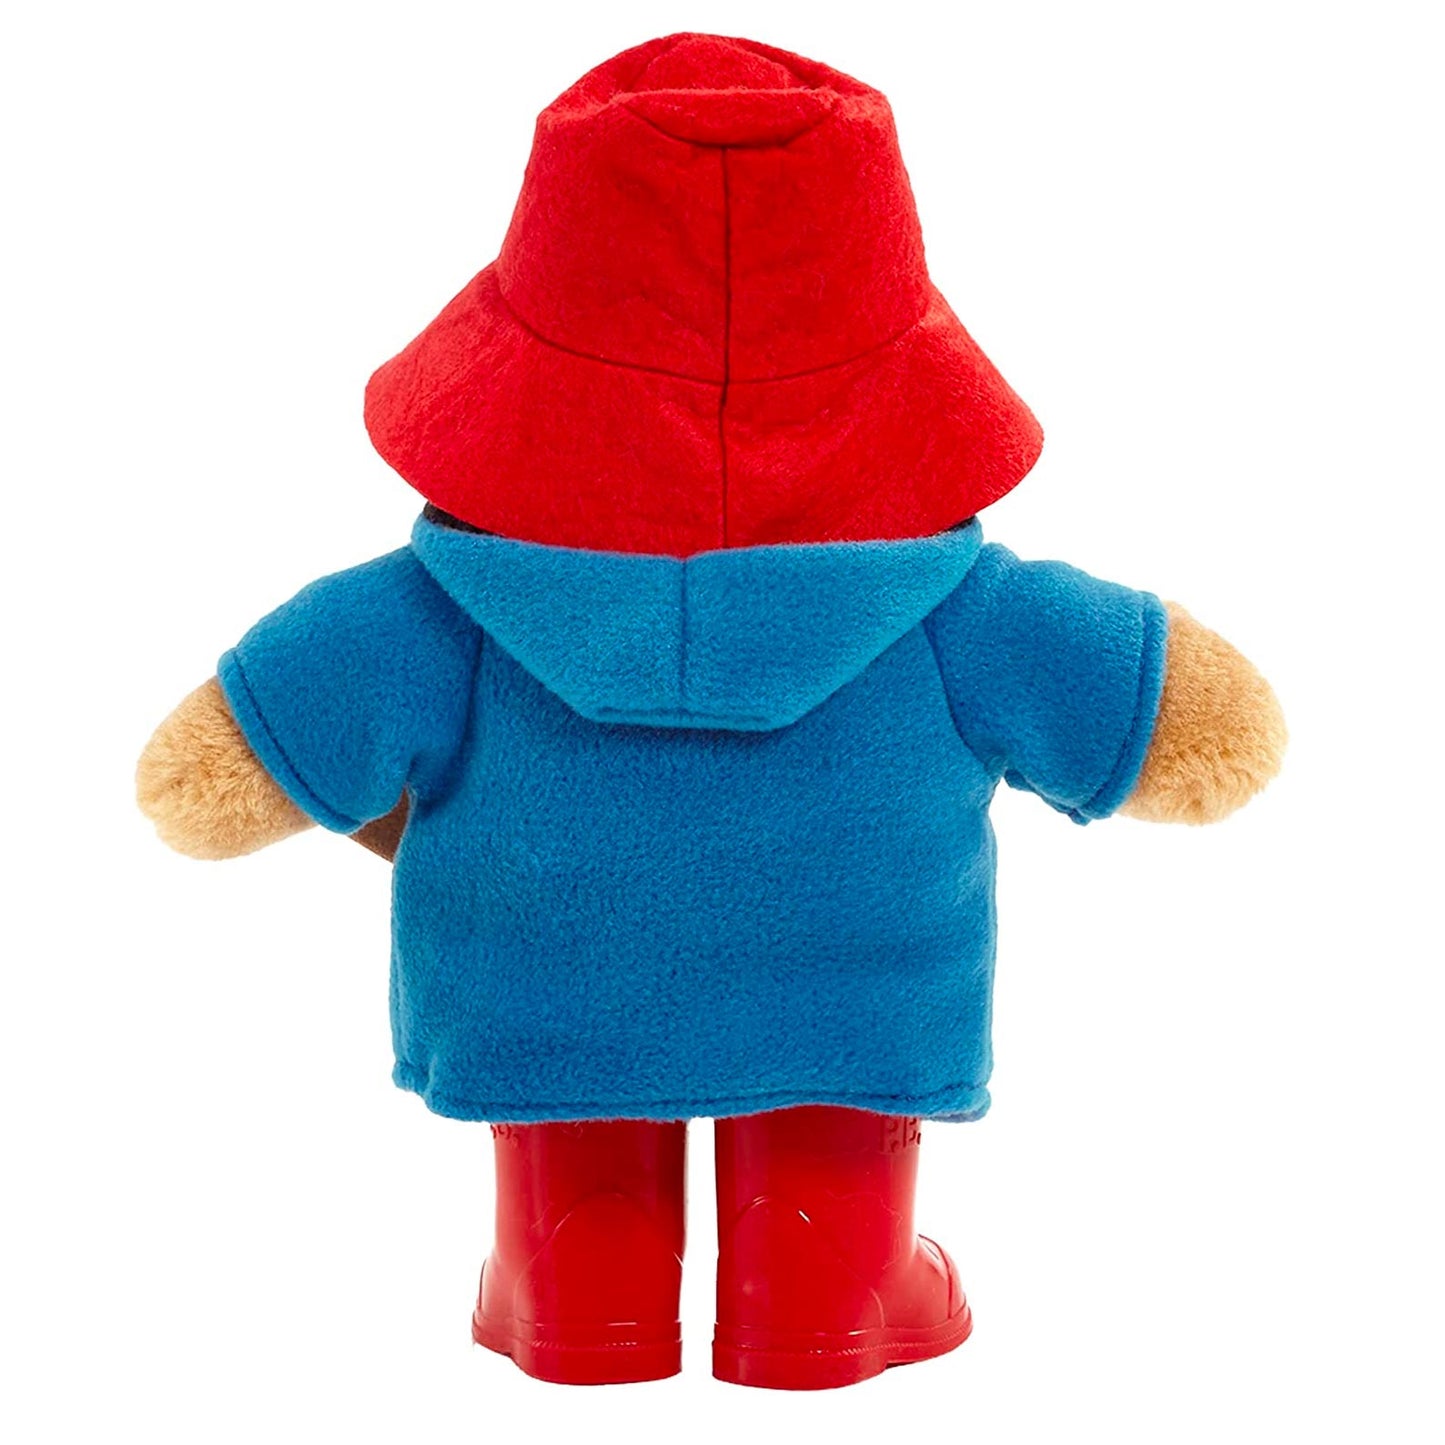 Soft Toy - Paddington Bear Teddy - with Boots